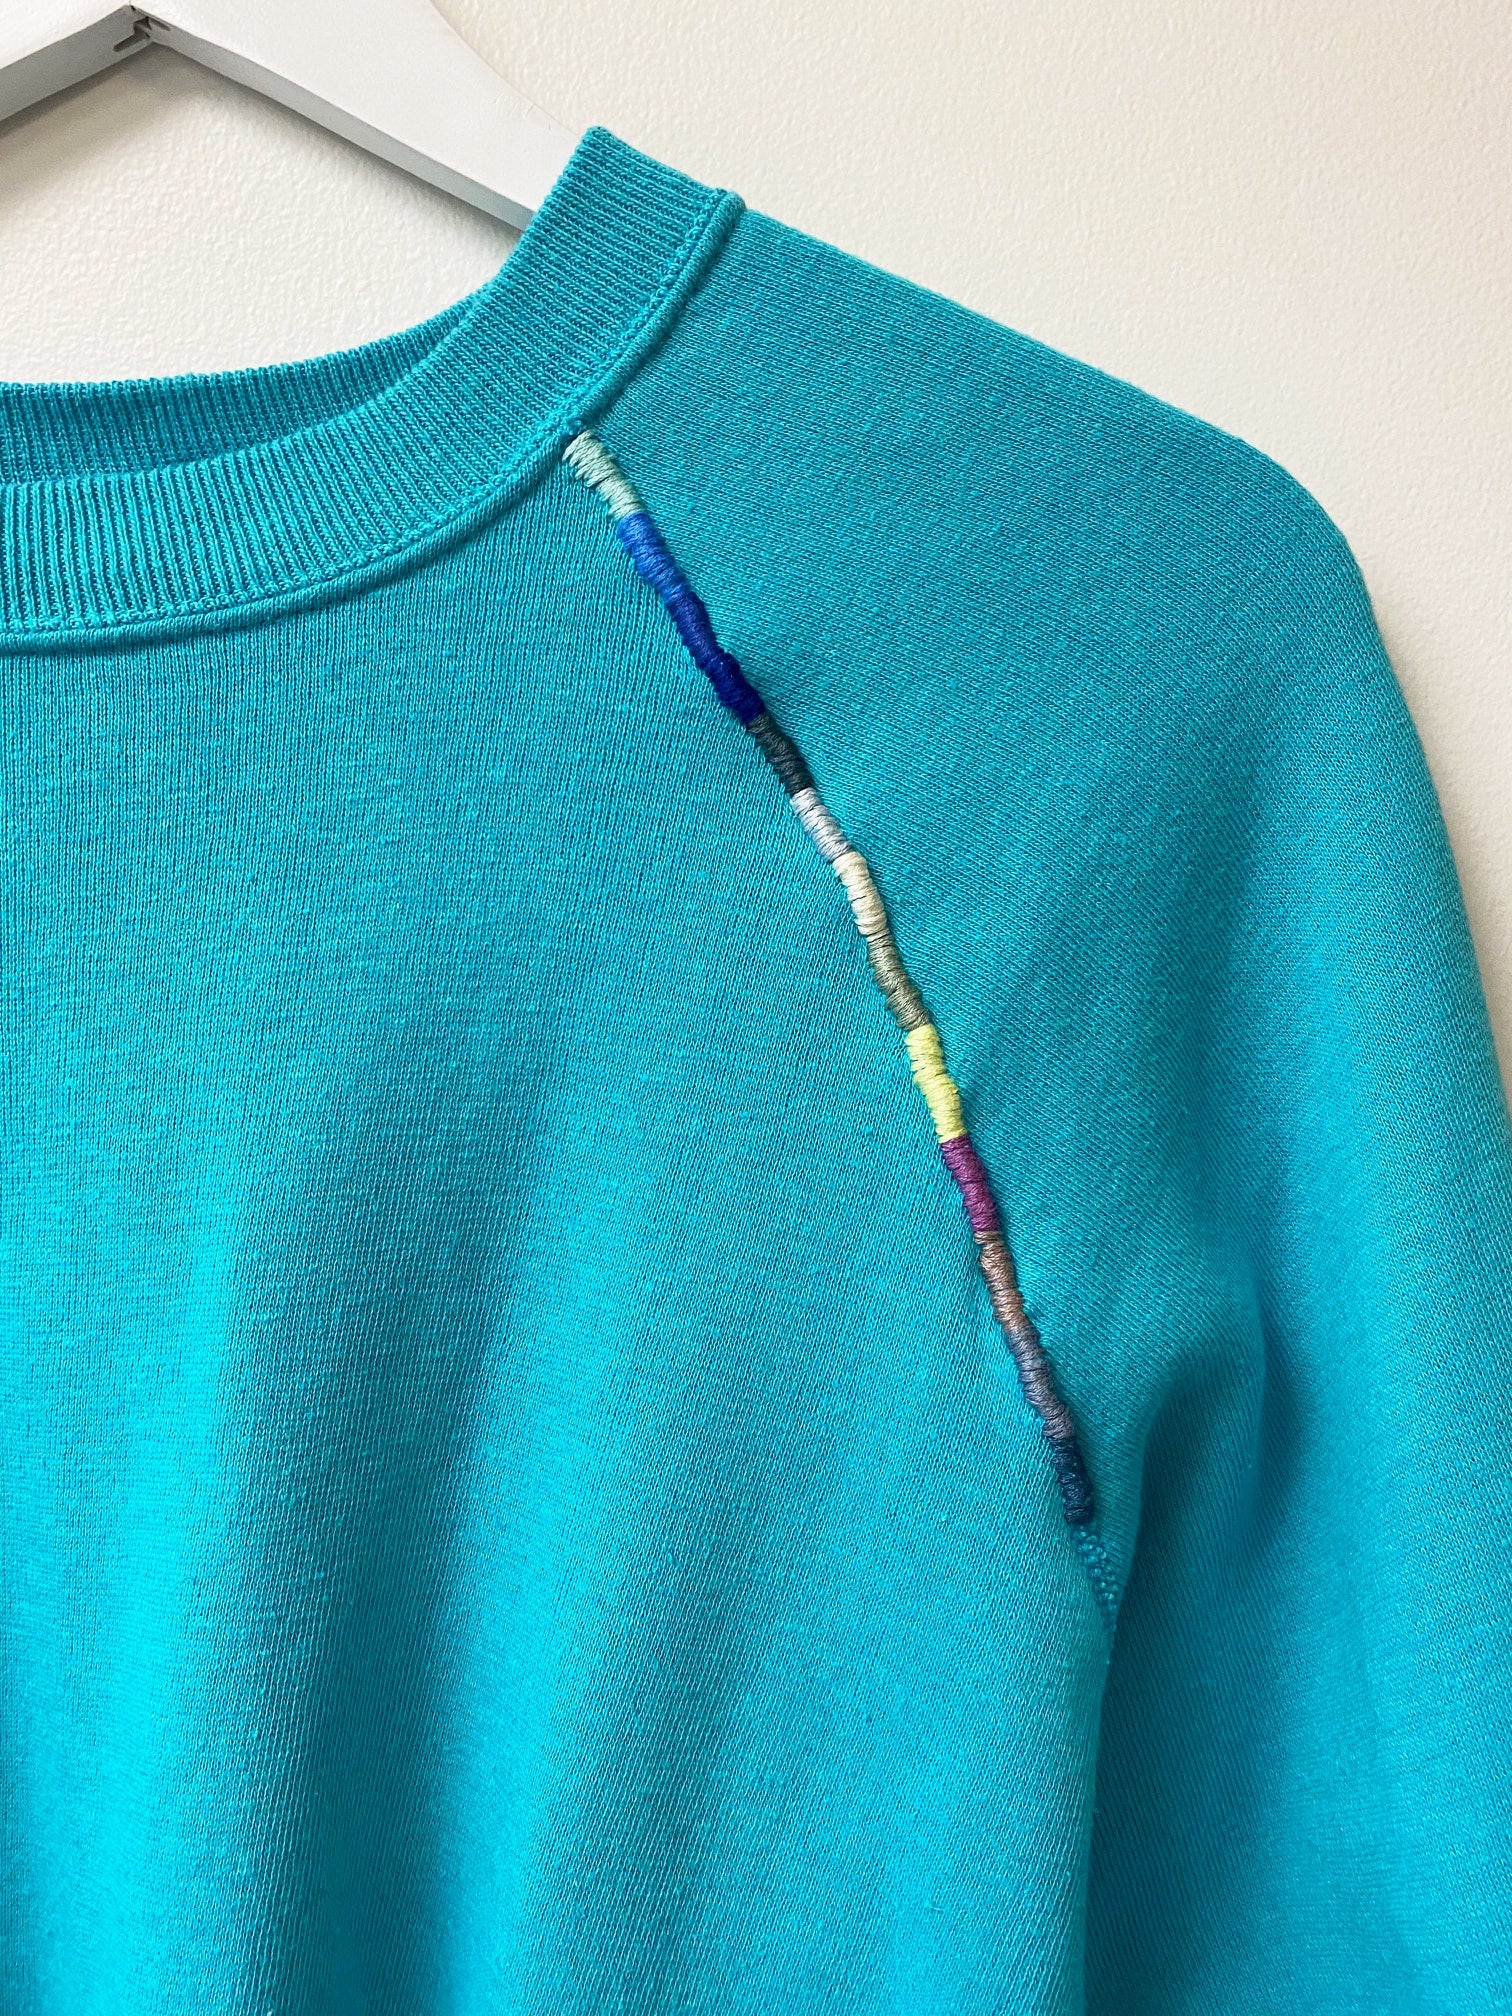 Teal Hand Embroidered Vintage Sweatshirt